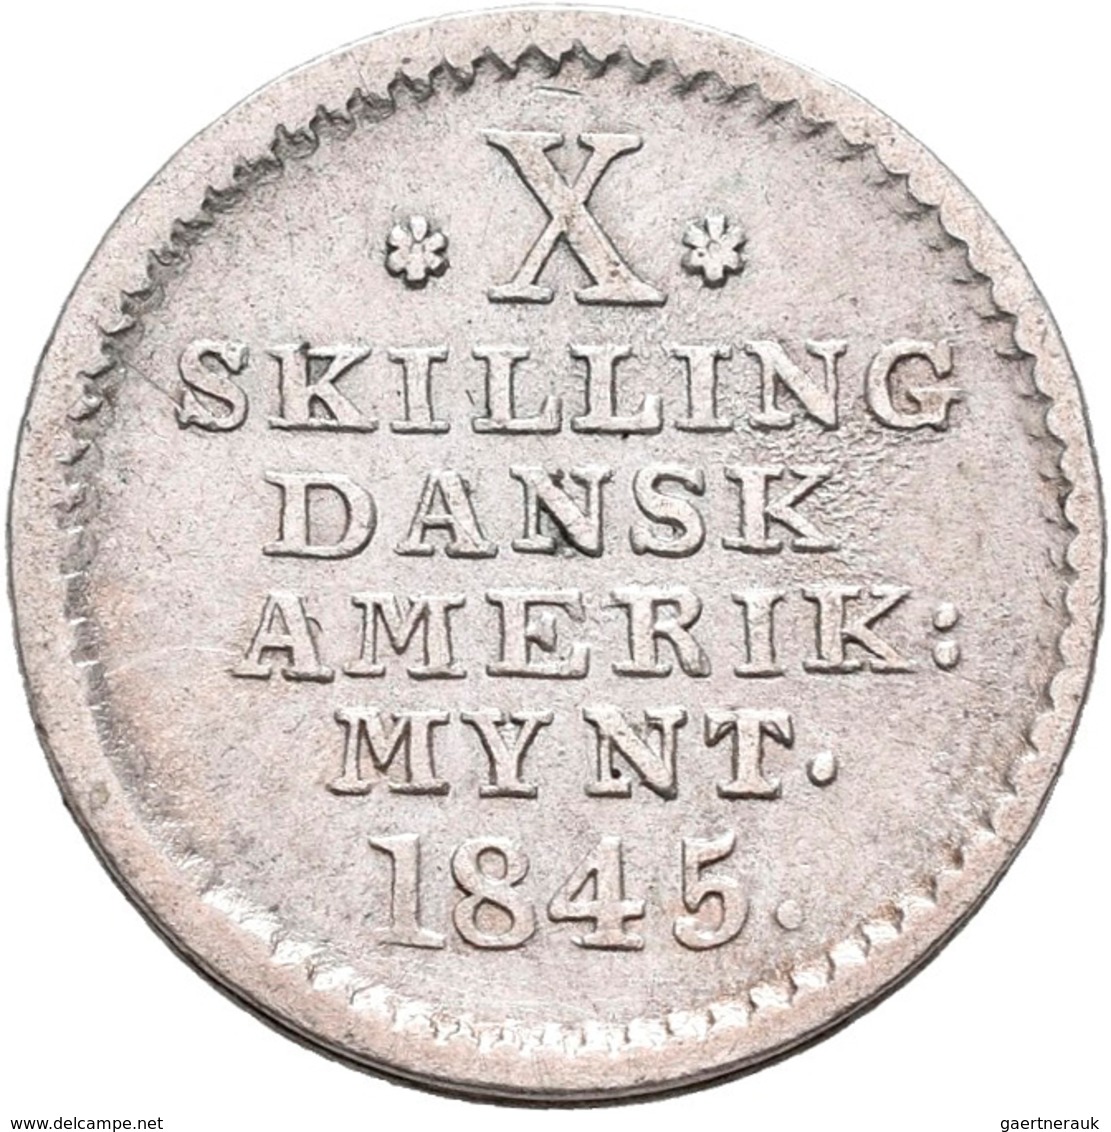 Dänisch-Westindien: (seit 1917 U.S. Virgin Islands) Christian VIII. 1839-1848: 10 Skilling 1845. KM# - Antillen